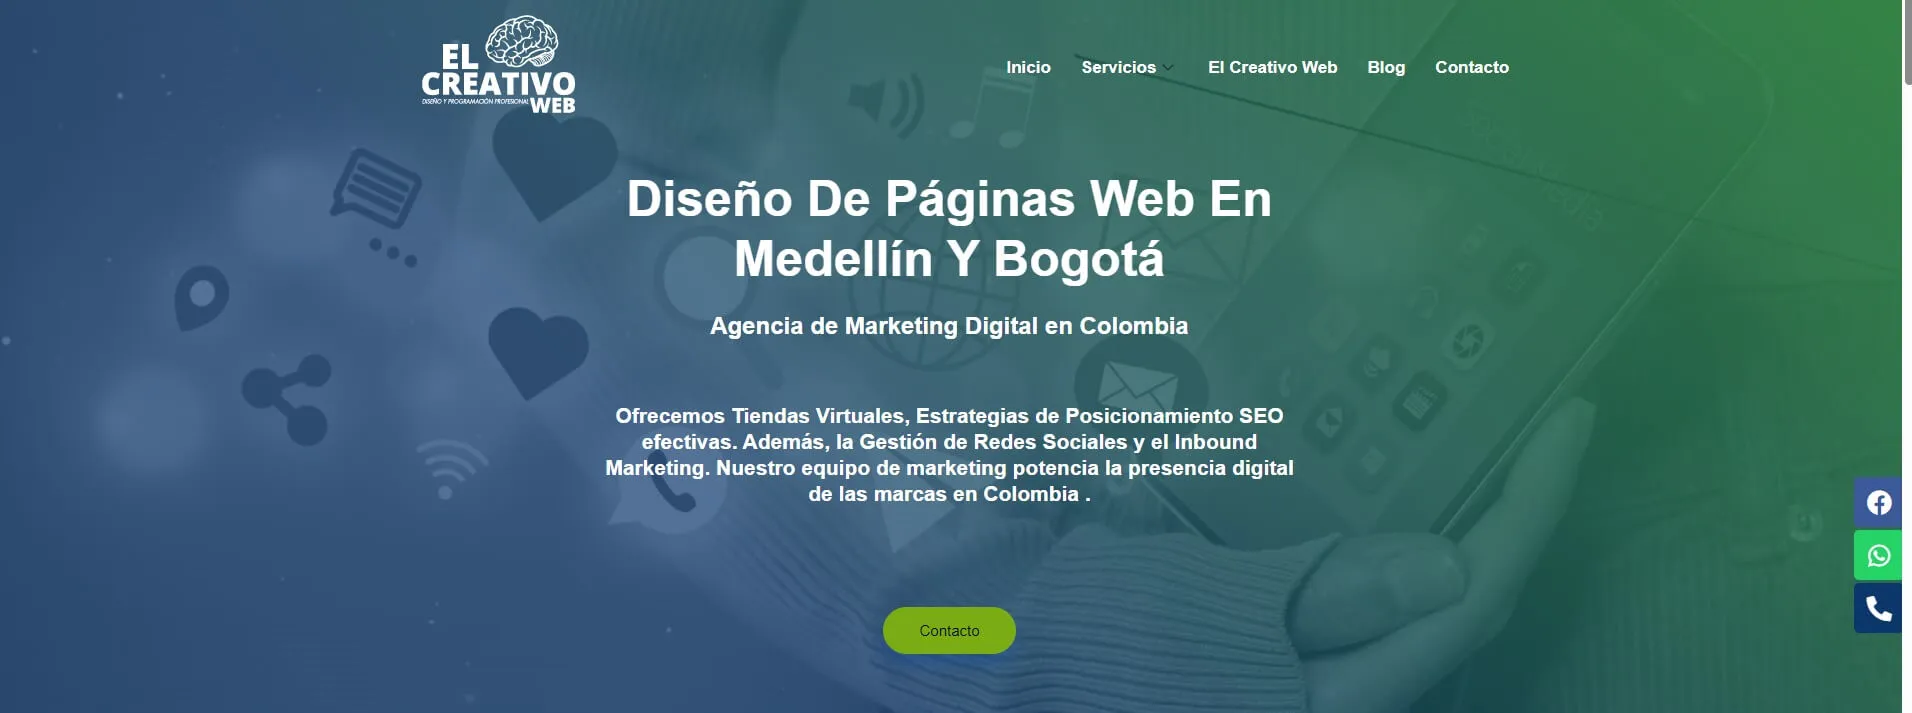 Diseño de páginas web en Quito